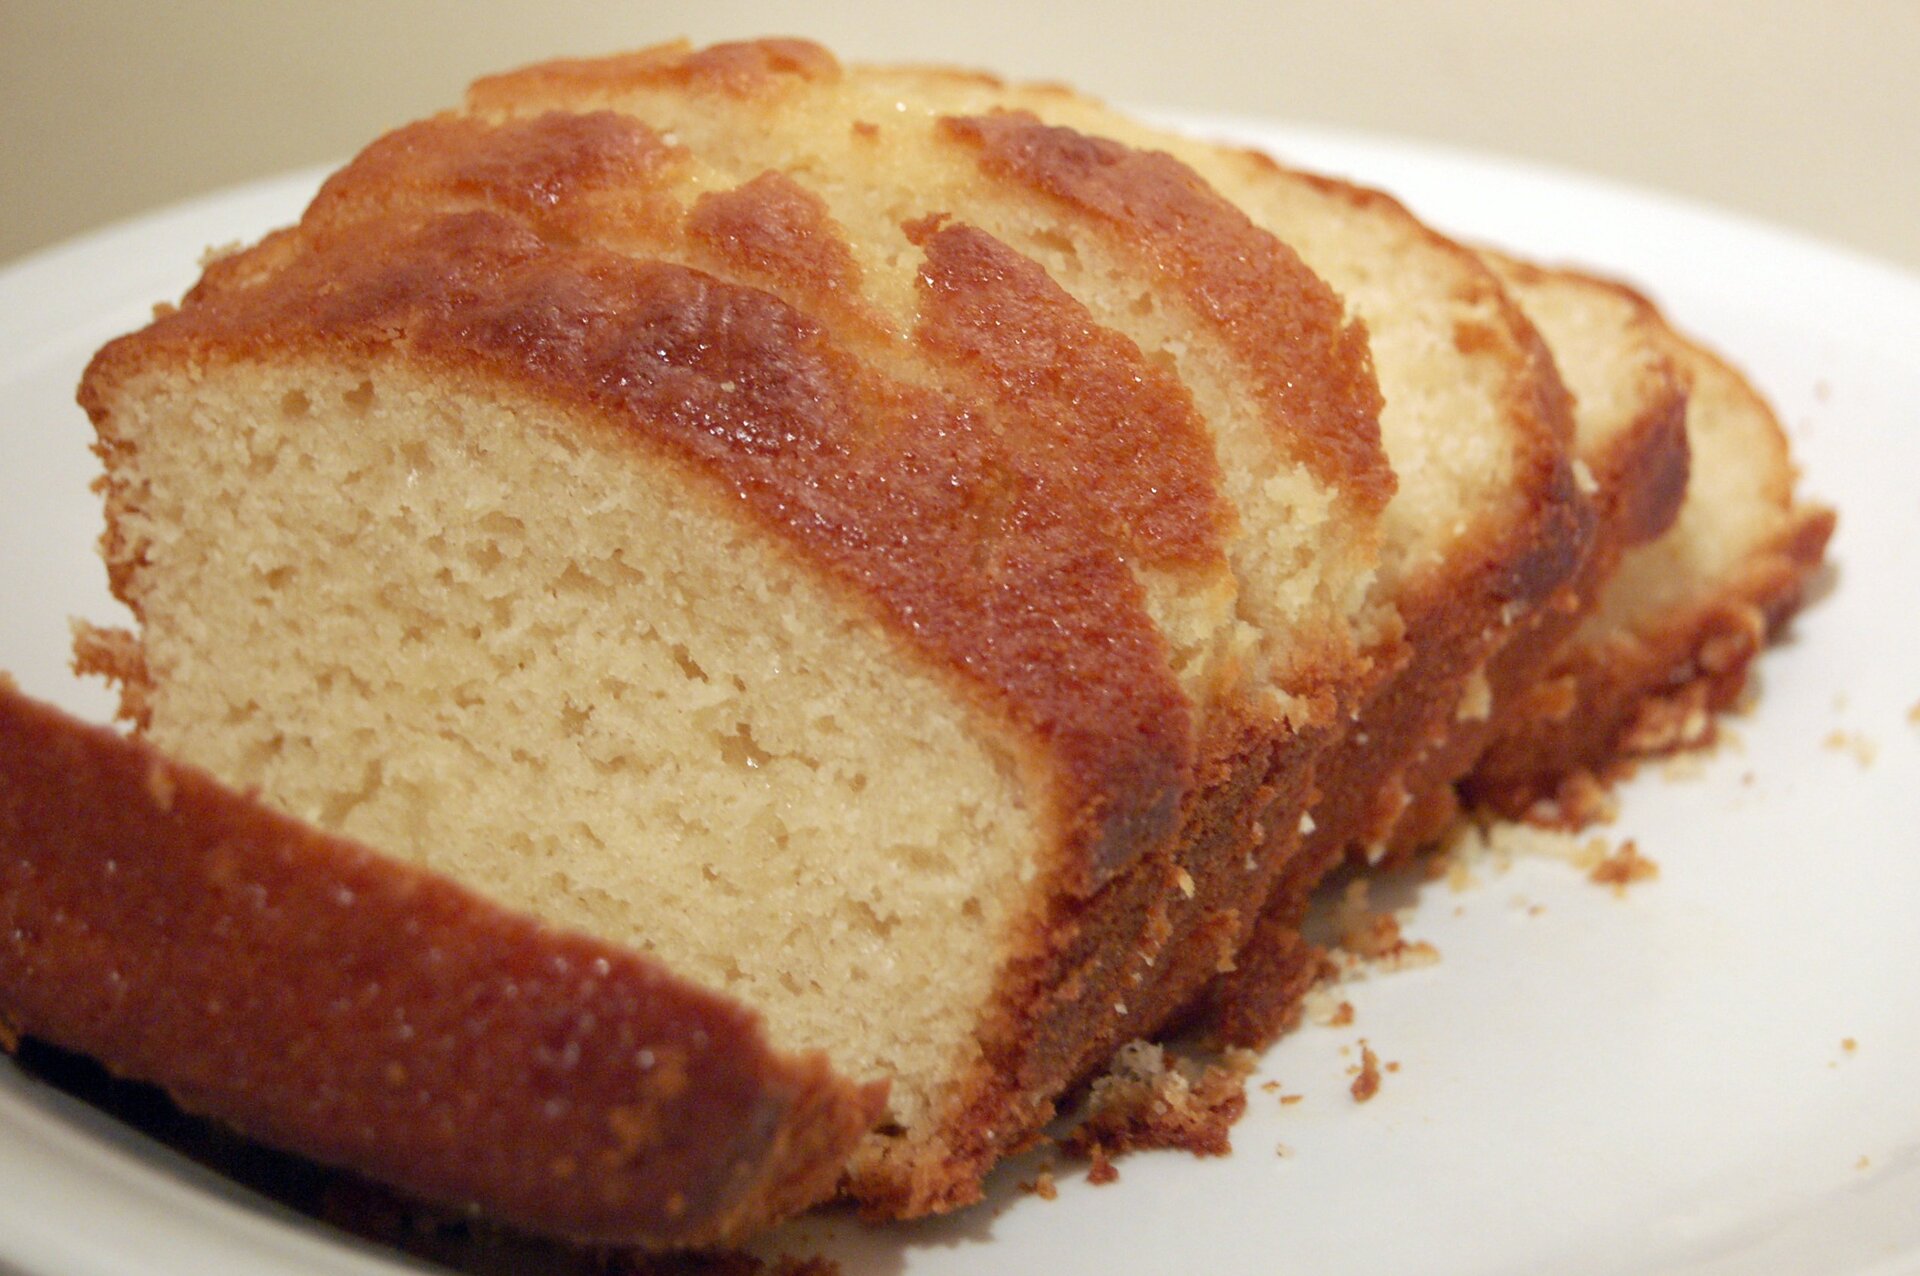 Na zdjęciu przedstawiono ciasto drożdżowe, które swoją konsystencję zawdzięcza fermentacji, której ulegają drożdże. W wyniku tej reakcji powstaje tlenek węgla(IV), spulchniający ciasto.